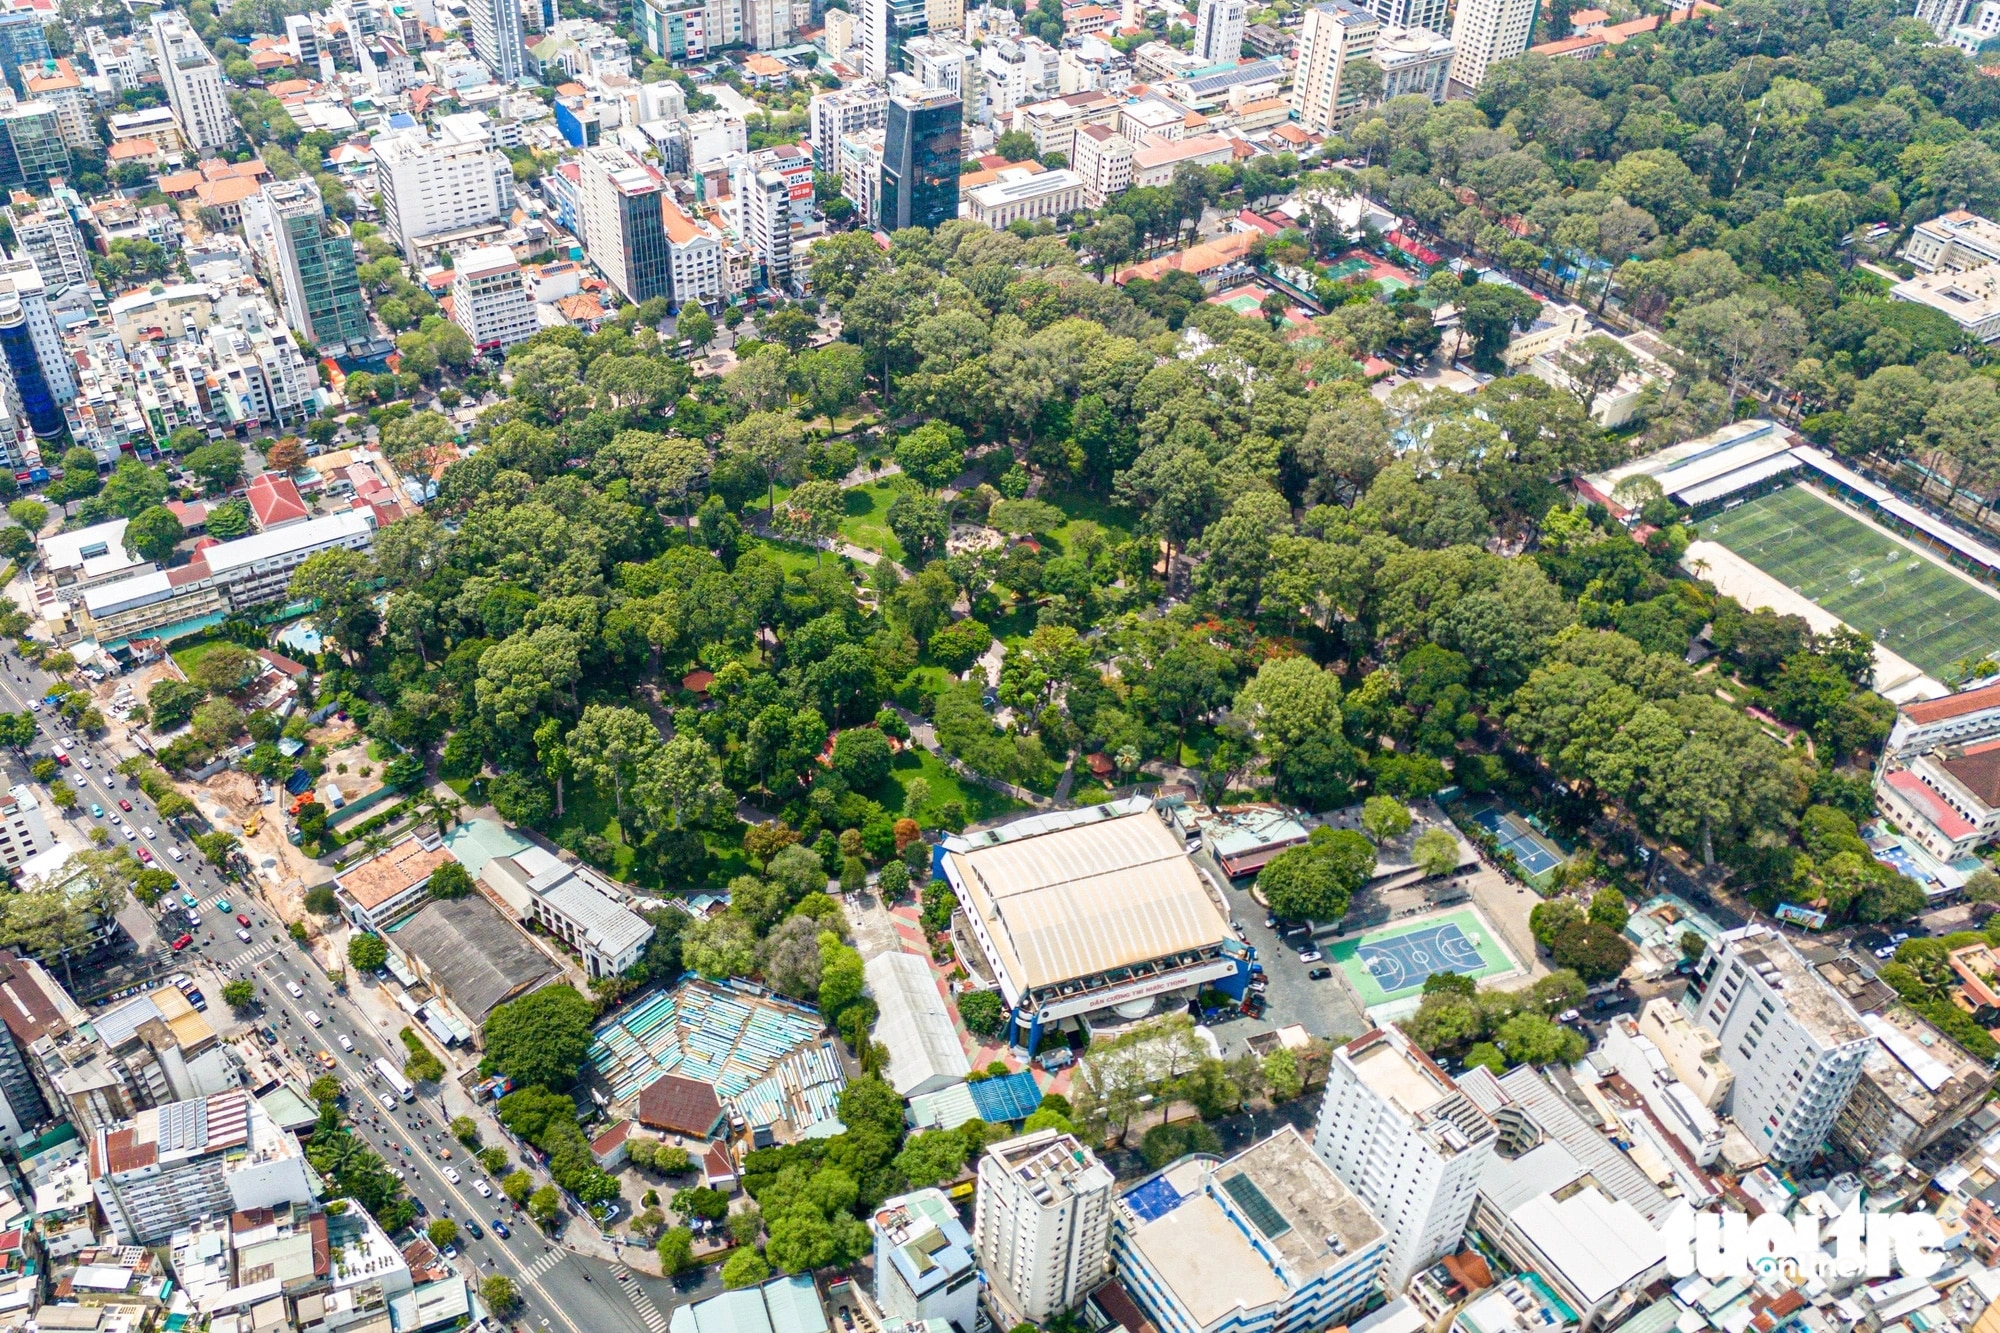 Công viên Tao Đàn trên đường Trương Định (phường Bến Thành, quận 1). Với diện tích hơn 10ha, nơi đây được bao phủ bởi bóng mát của hơn 1.000 cây xanh và không ít trong số đó là cổ thụ